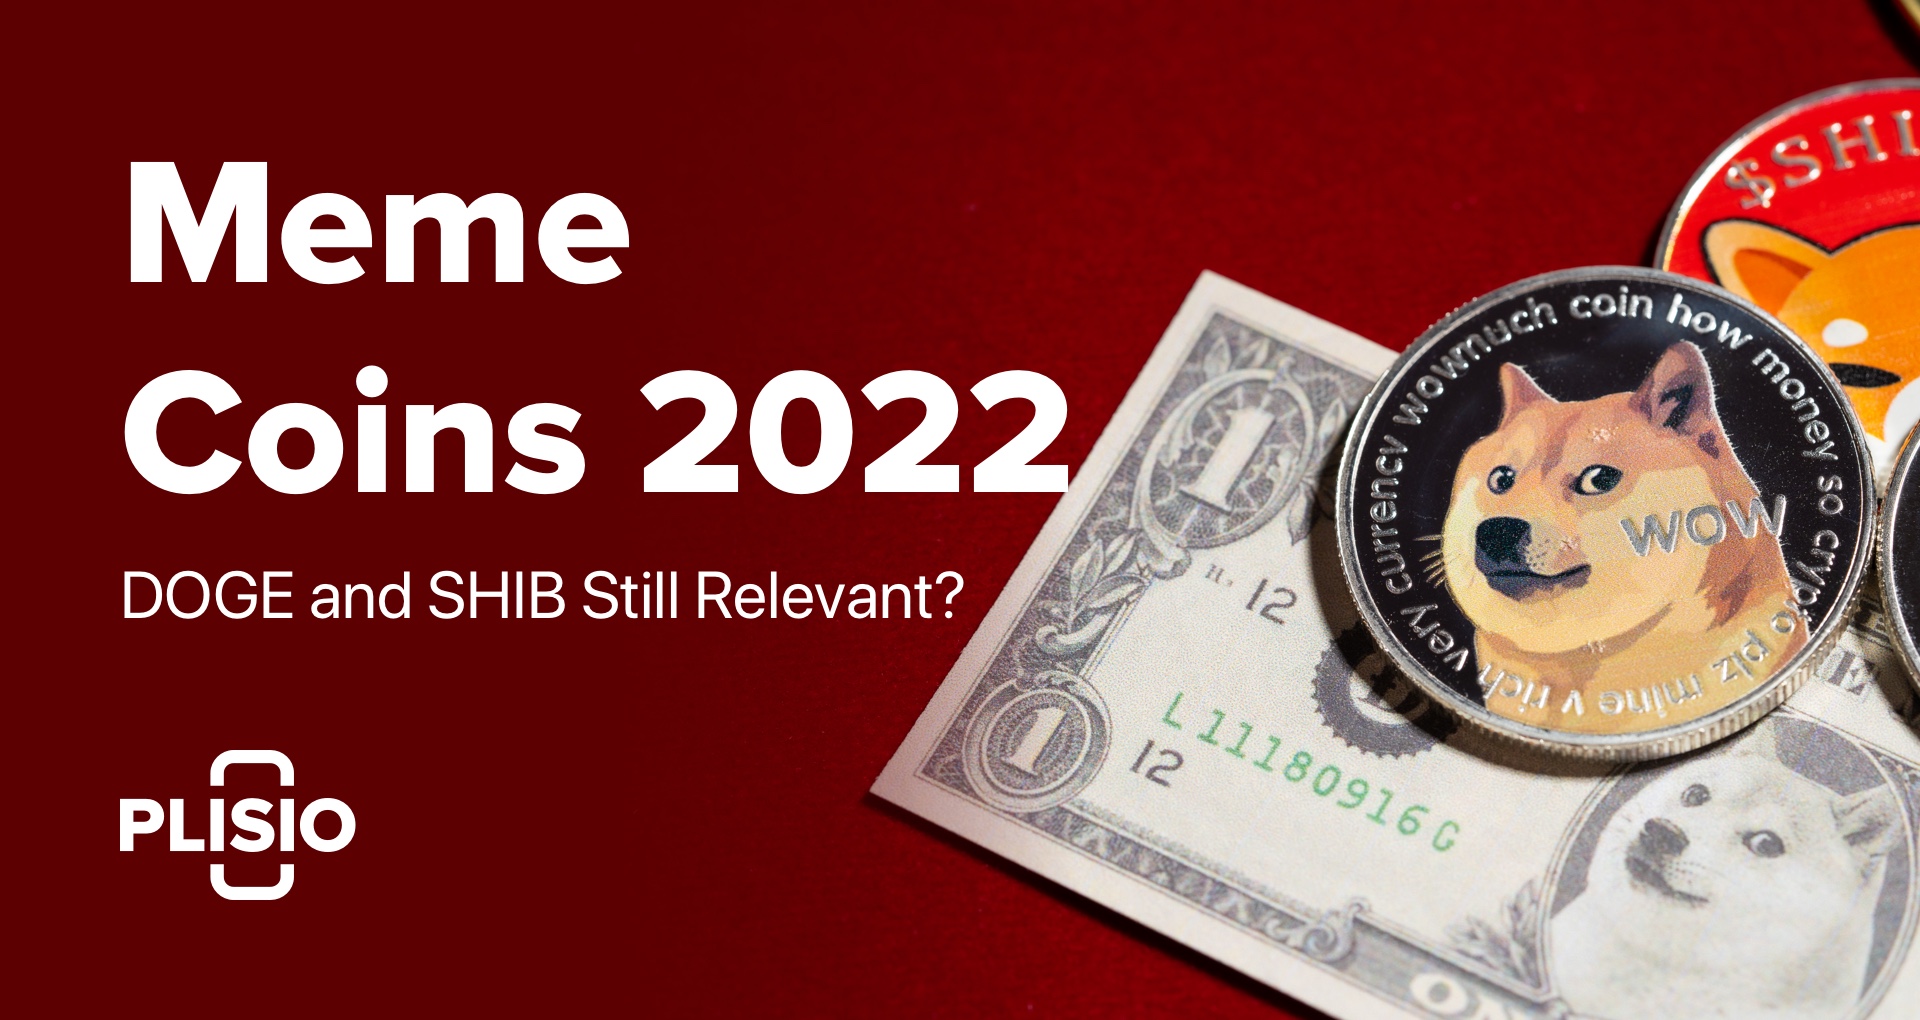 Meme Coins vào năm 2022: Dogecoin và Shiba Inu vẫn còn phù hợp?